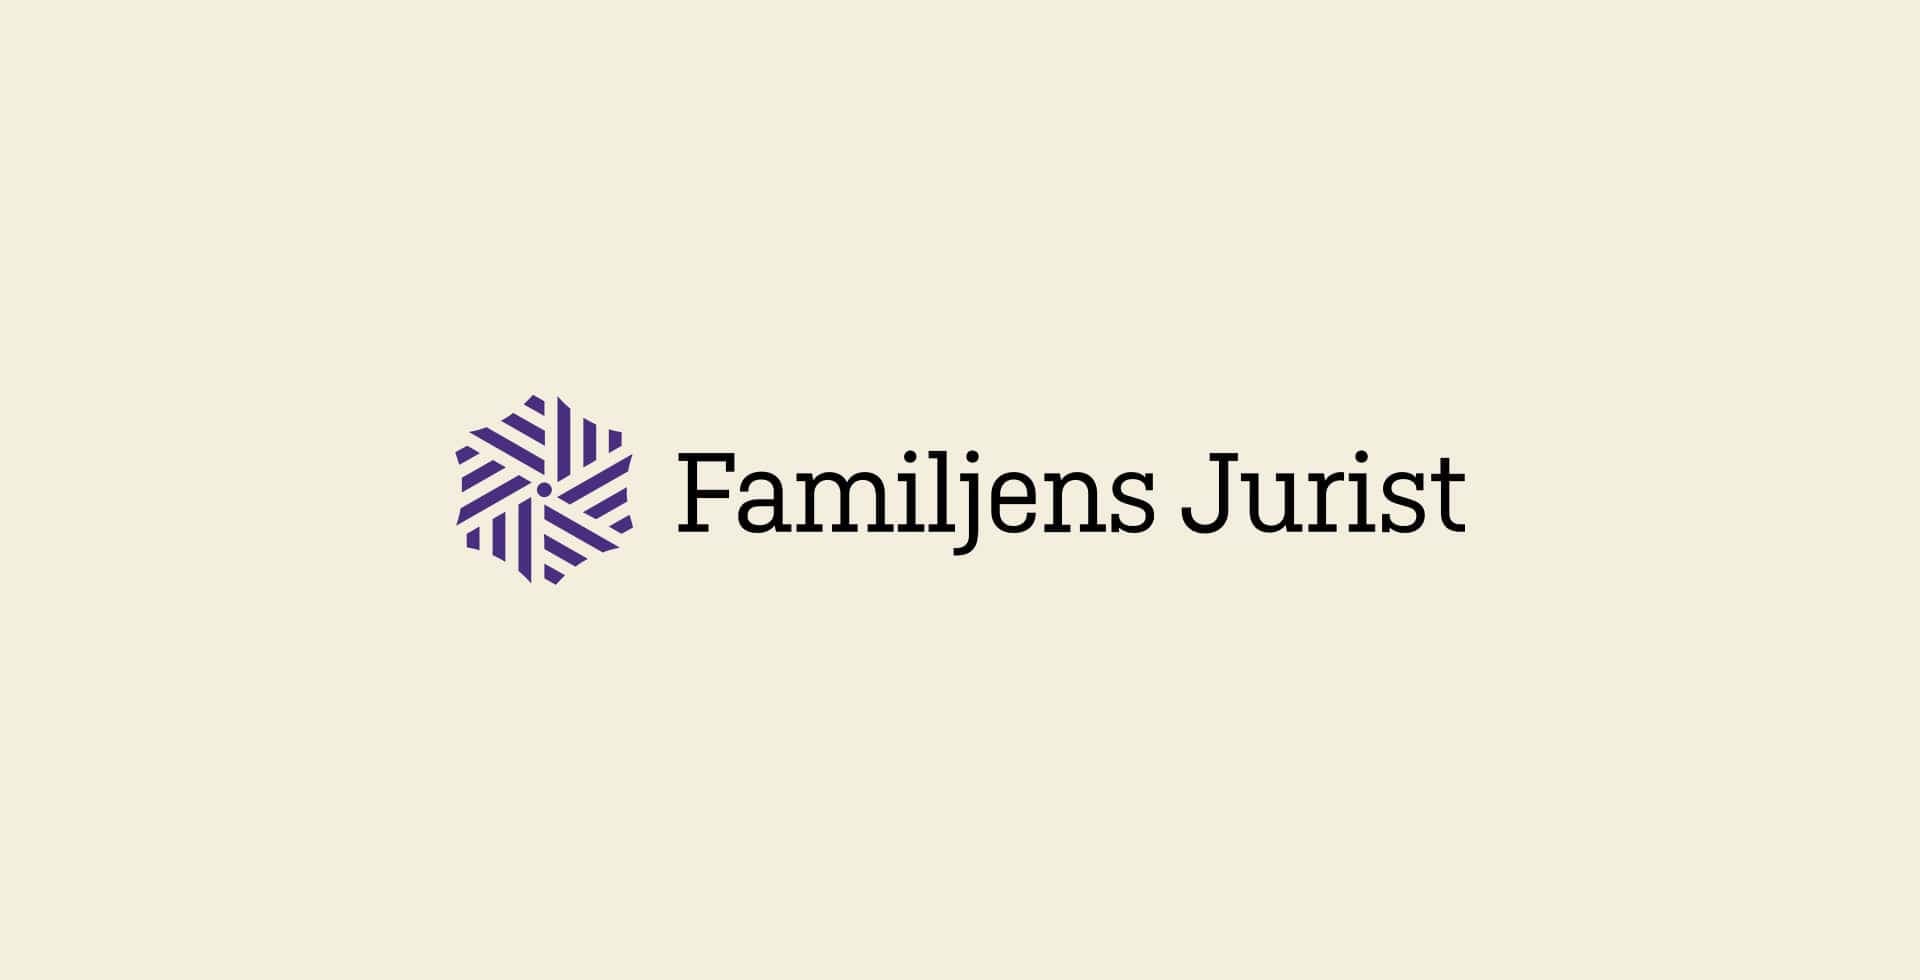 Familjens jurists logotyp mot beige bakgrund.